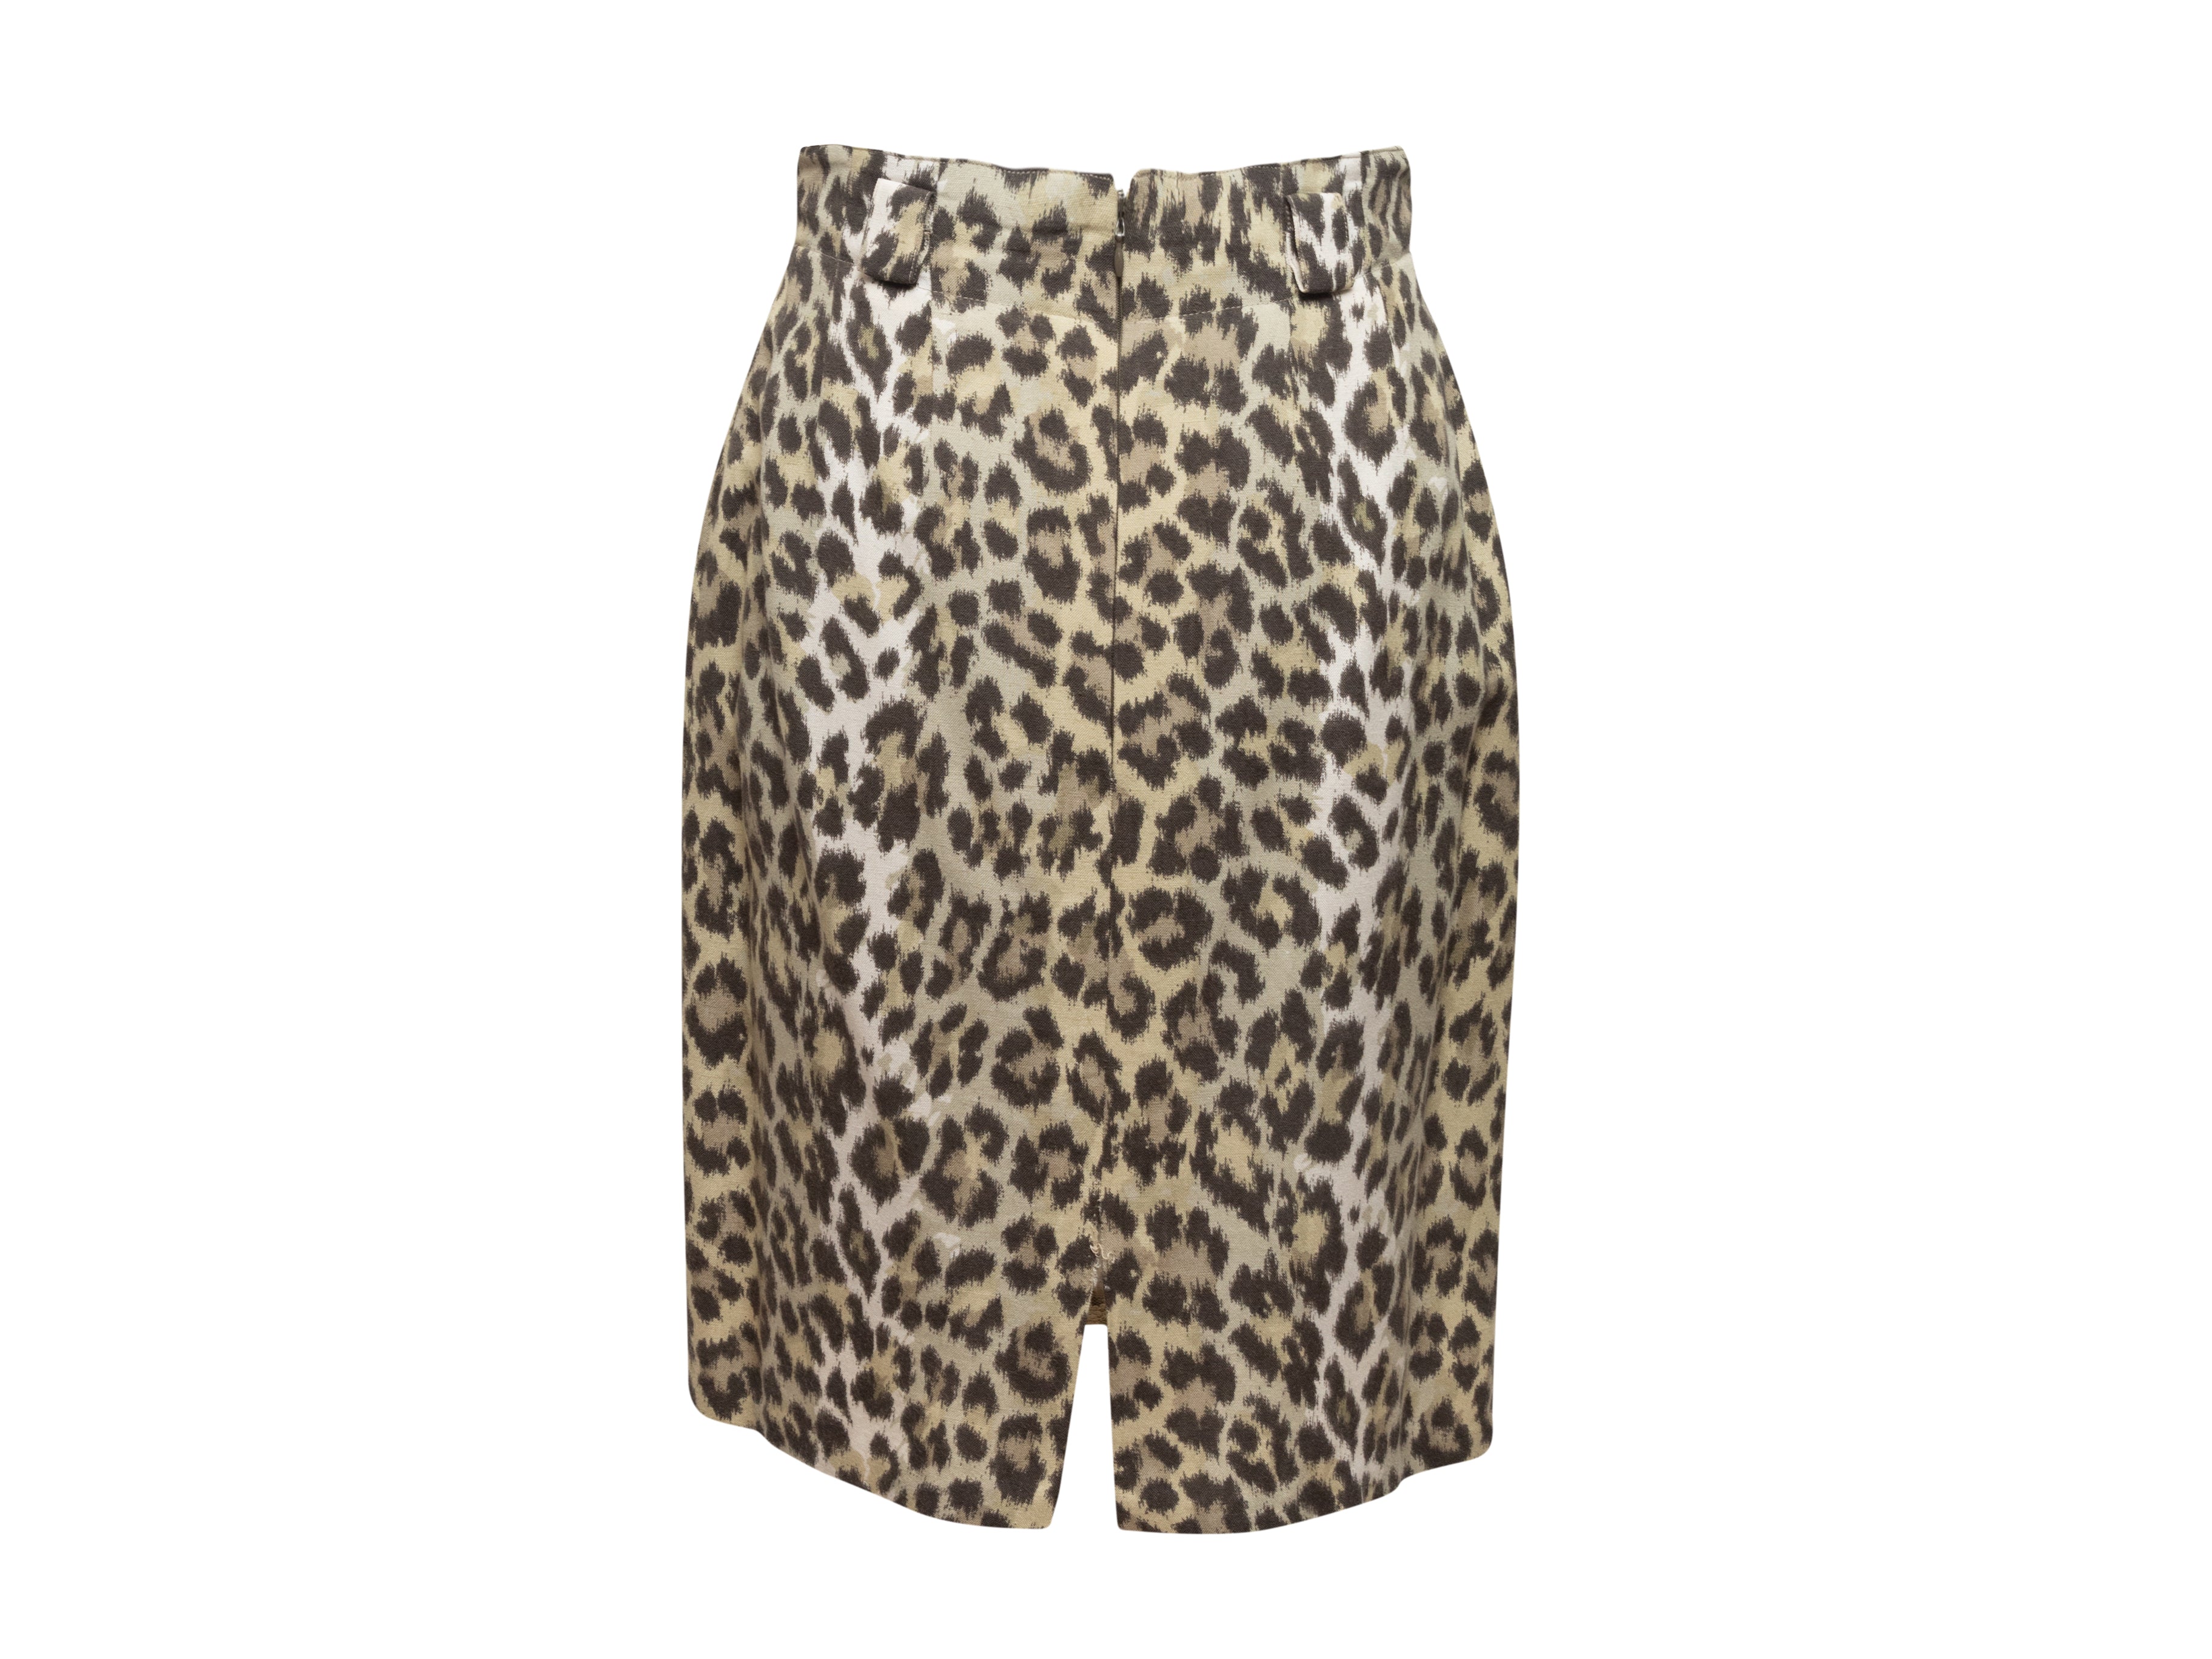 Tan & Black Leopard Print Skirt Suit